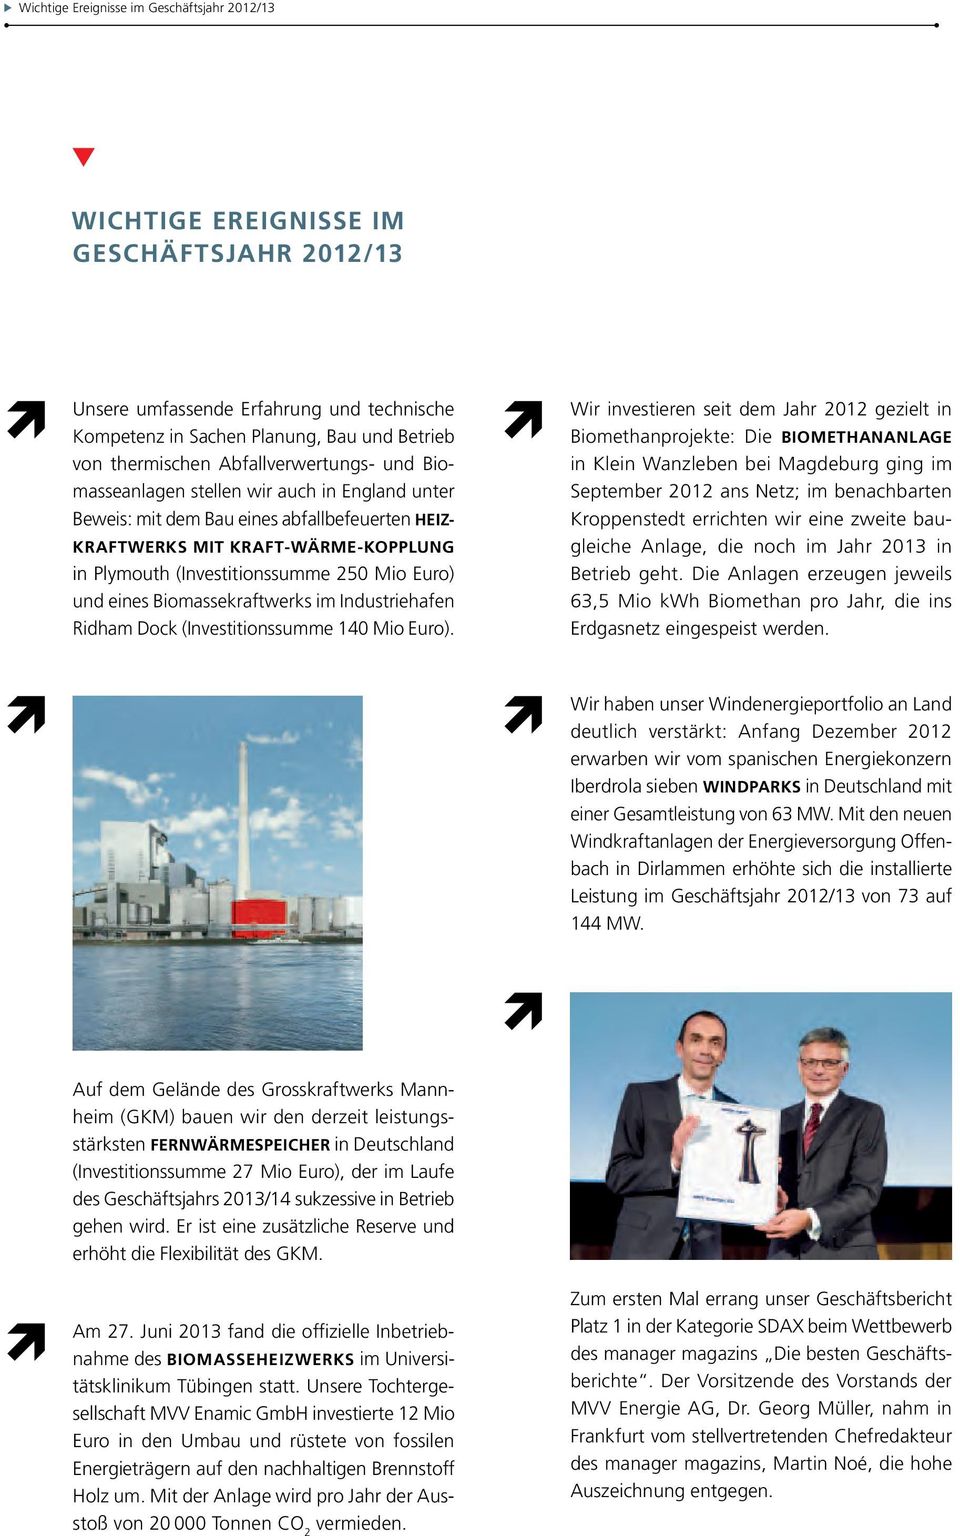 Euro) und eines Biomassekraftwerks im Industrie hafen Ridham Dock (Investitionssumme 140 Mio Euro).